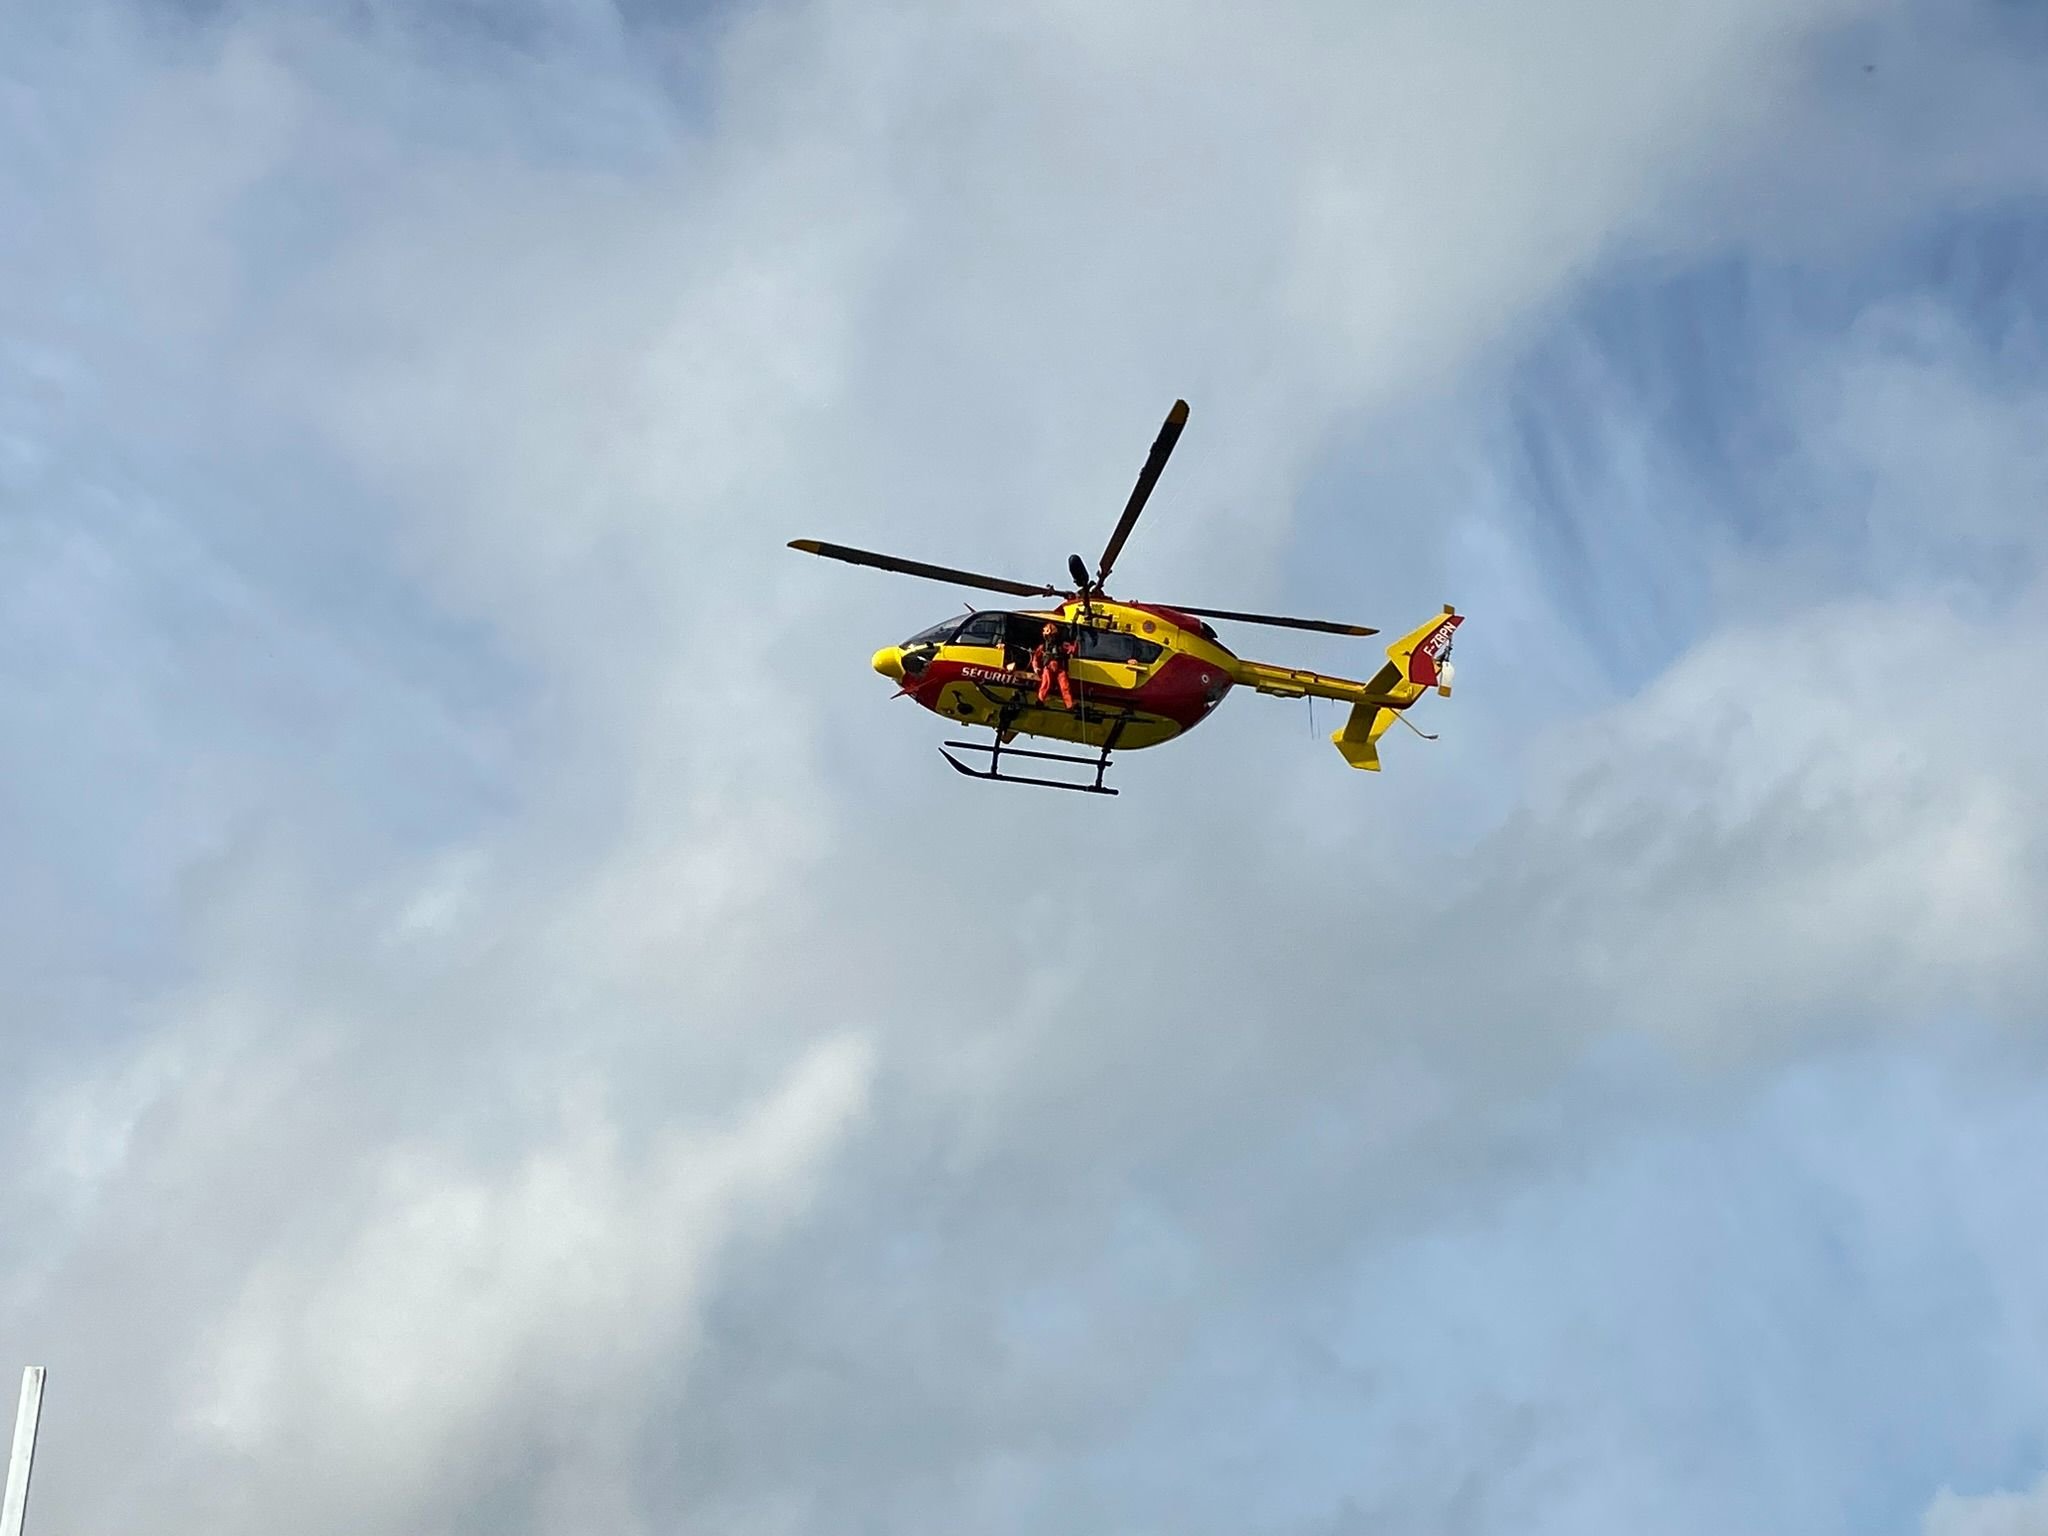 L'apprenti victime d'une chute sur un chantier à Arronville a été évacué vers l'hôpital Beaujon à l'aide d'un hélicoptère. Son pronostic vital était engagé ce samedi. (Illustration) LP/S.R